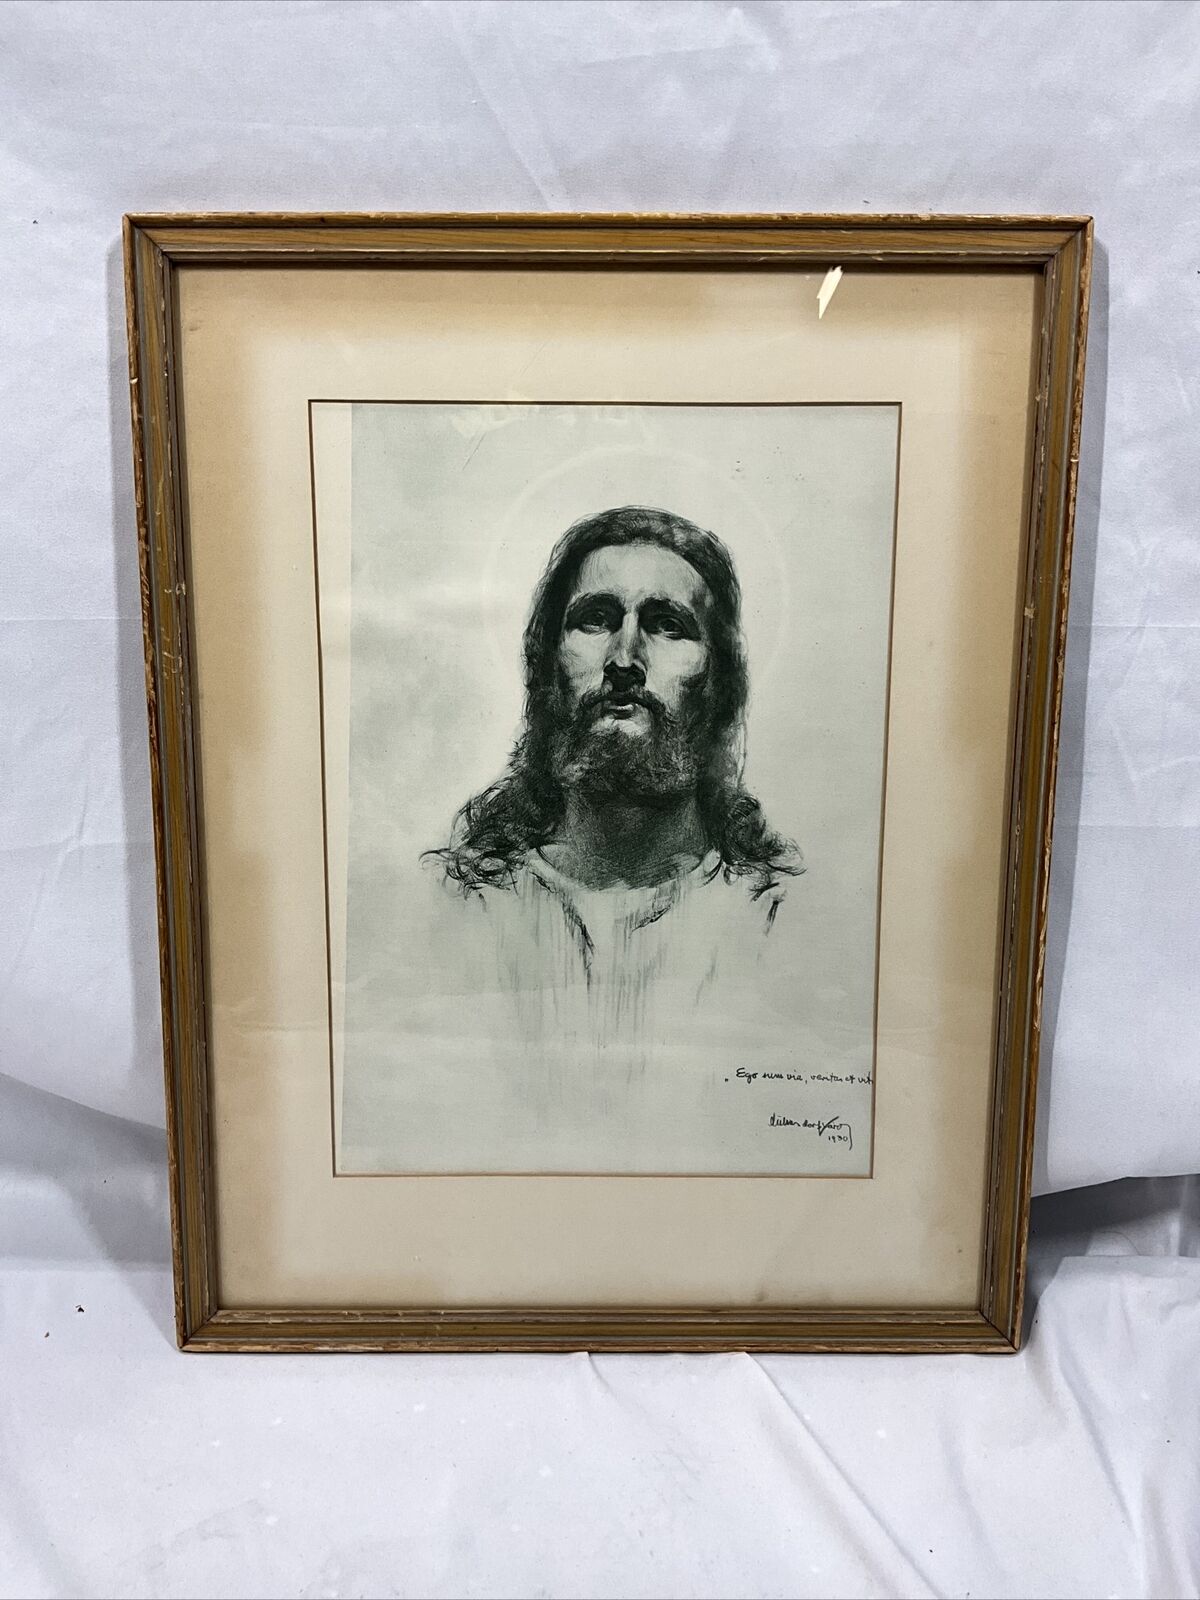 Framed, Signed Print of Jesus